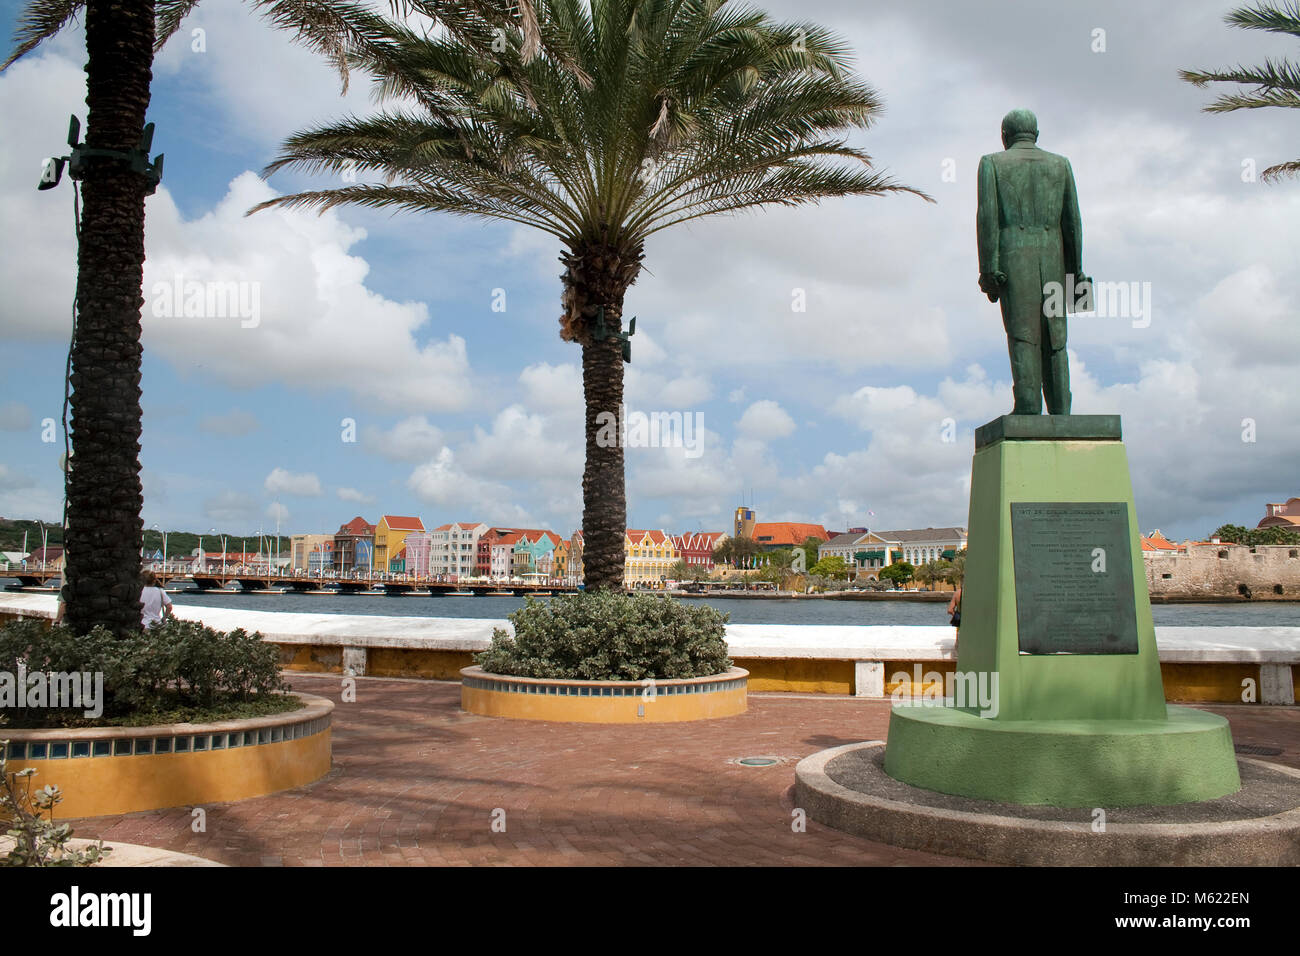 Dr. Efrain Jonchkeer Statue in Rif Fort, ehemaliger Premierminister von Niederländische Antillen, Willemstad, Curacao, Niederländische Antillen, Karibik Stockfoto